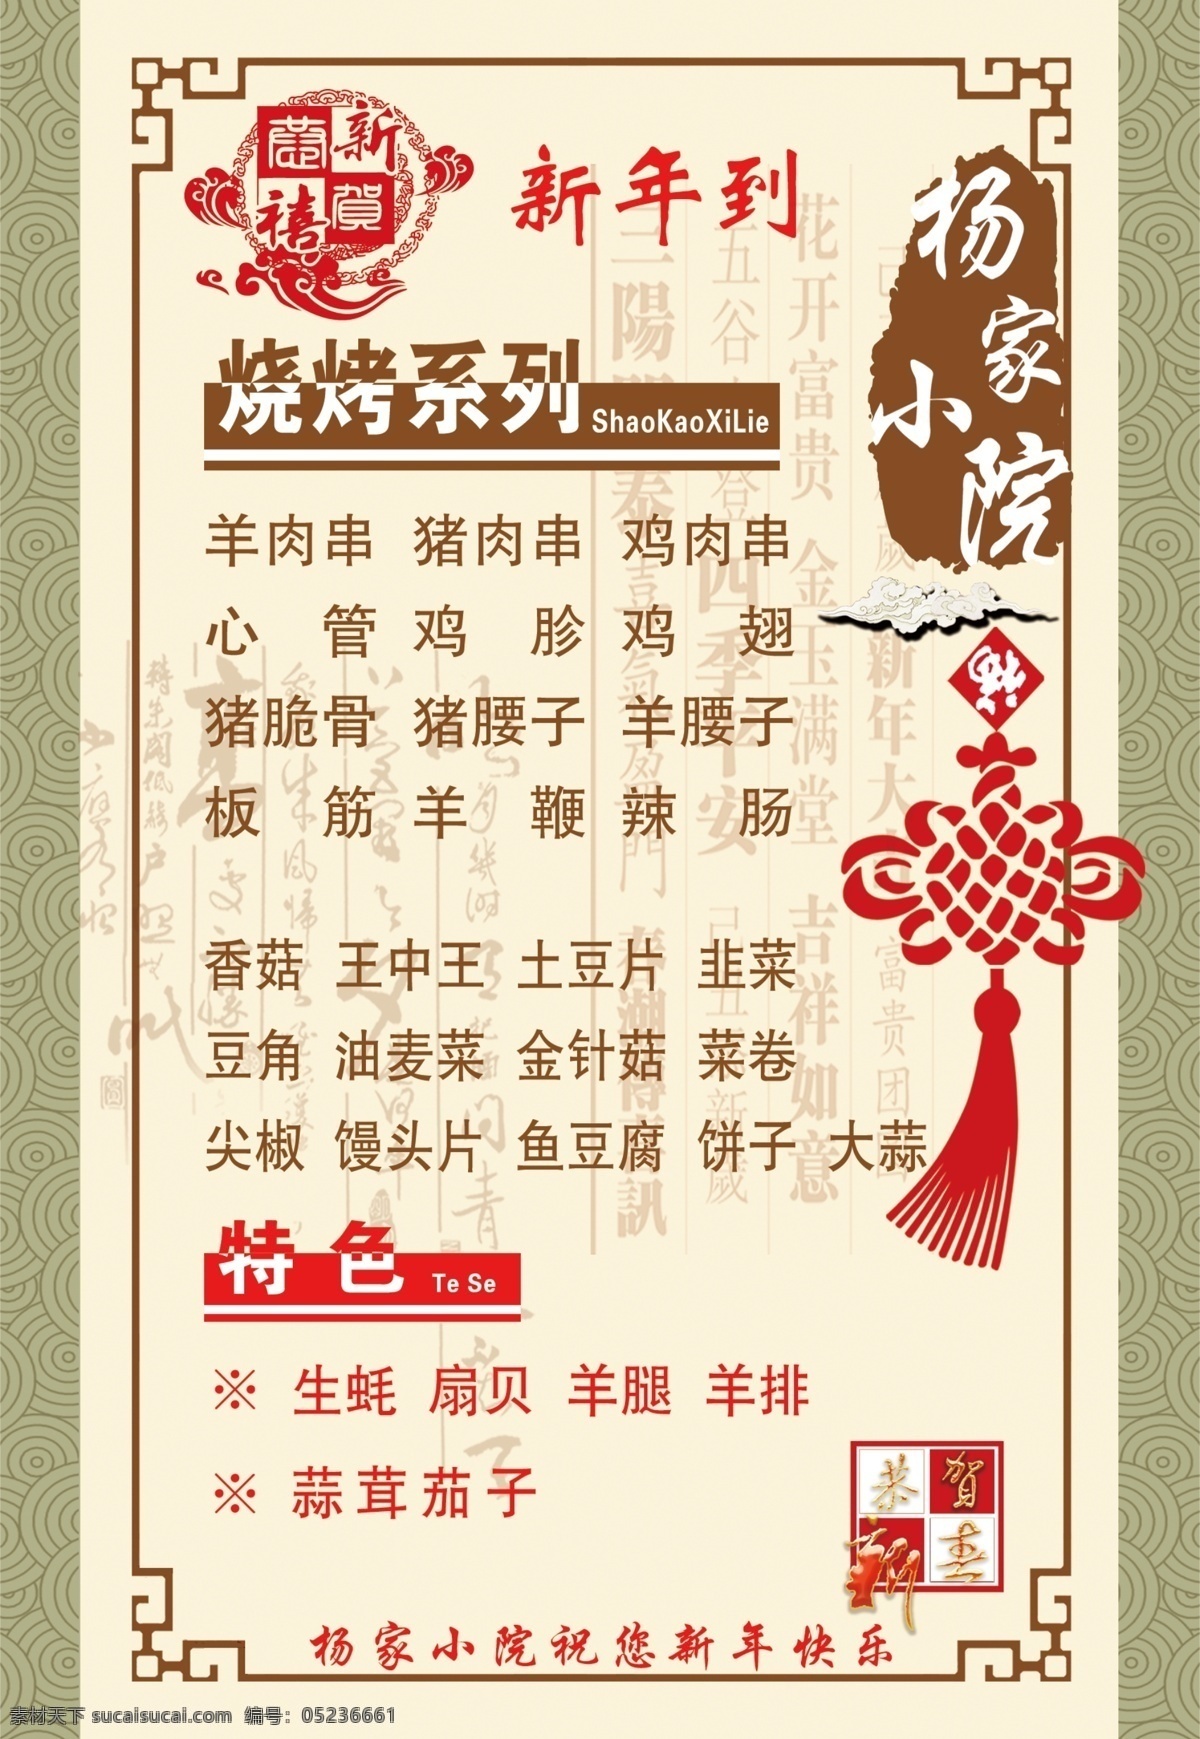 春节 菜单 烧烤 系列 吉祥街 新年 特色 菜单价目表 价格表 展板模板